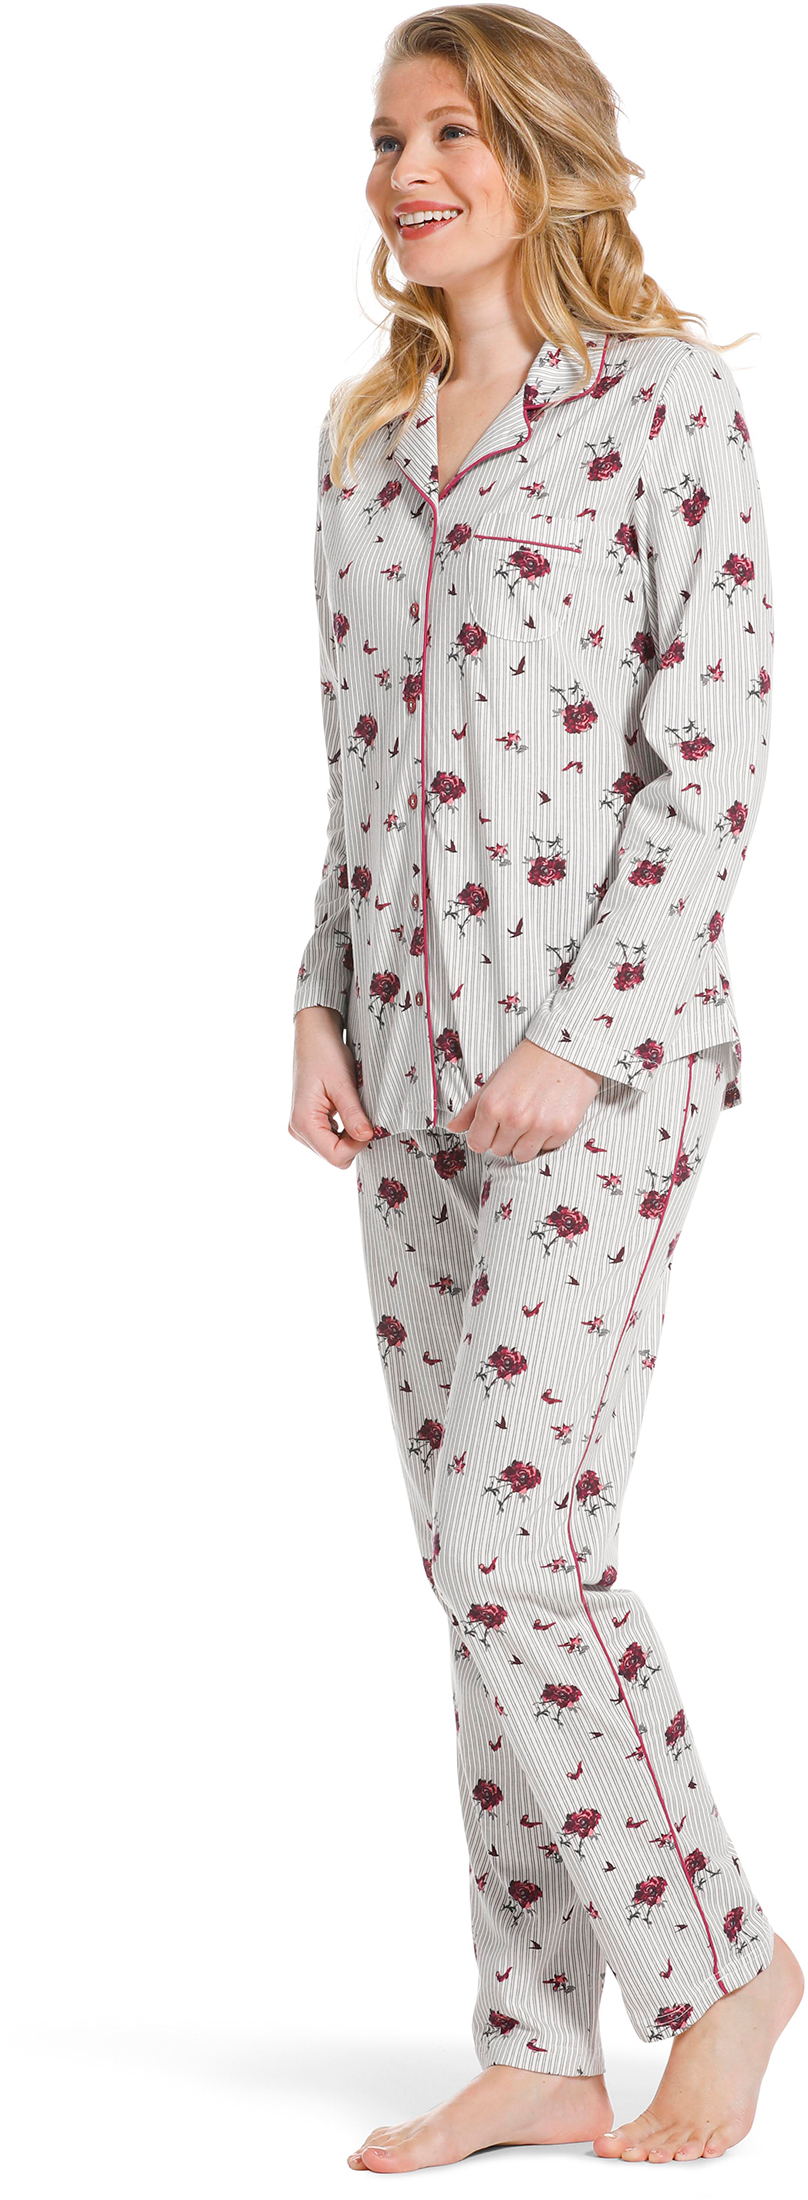 Pastunette doorknoop dames pyjama 20222 156 6 40